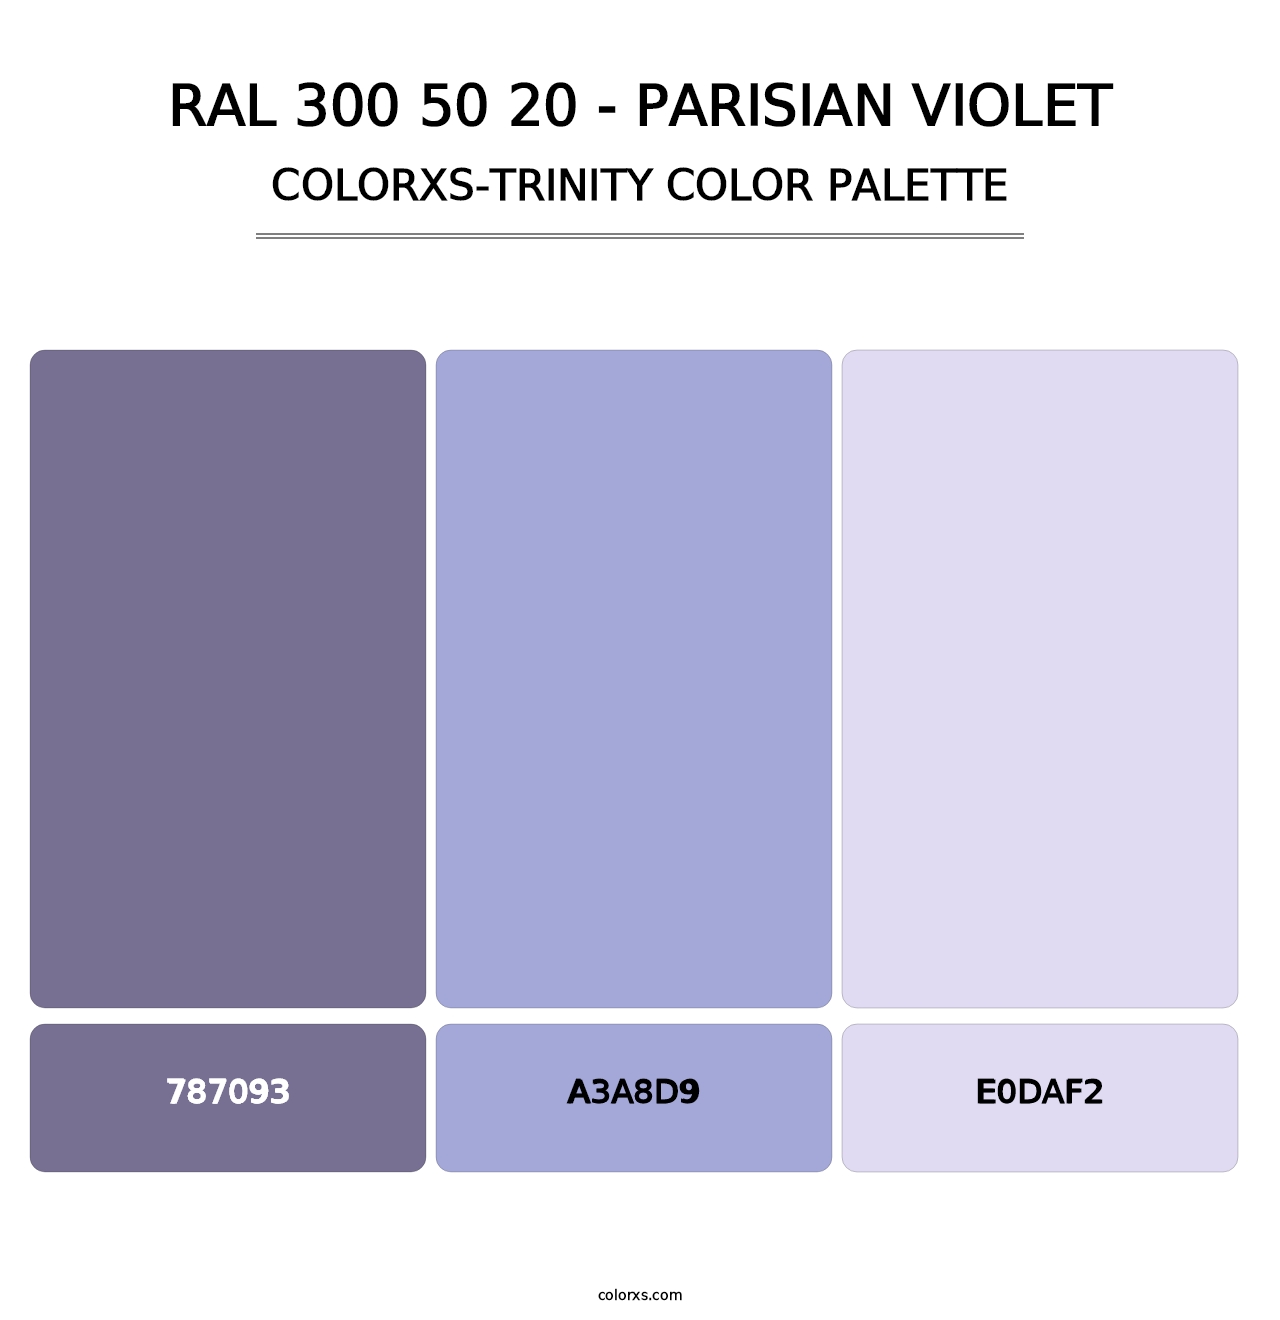 RAL 300 50 20 - Parisian Violet - Colorxs Trinity Palette